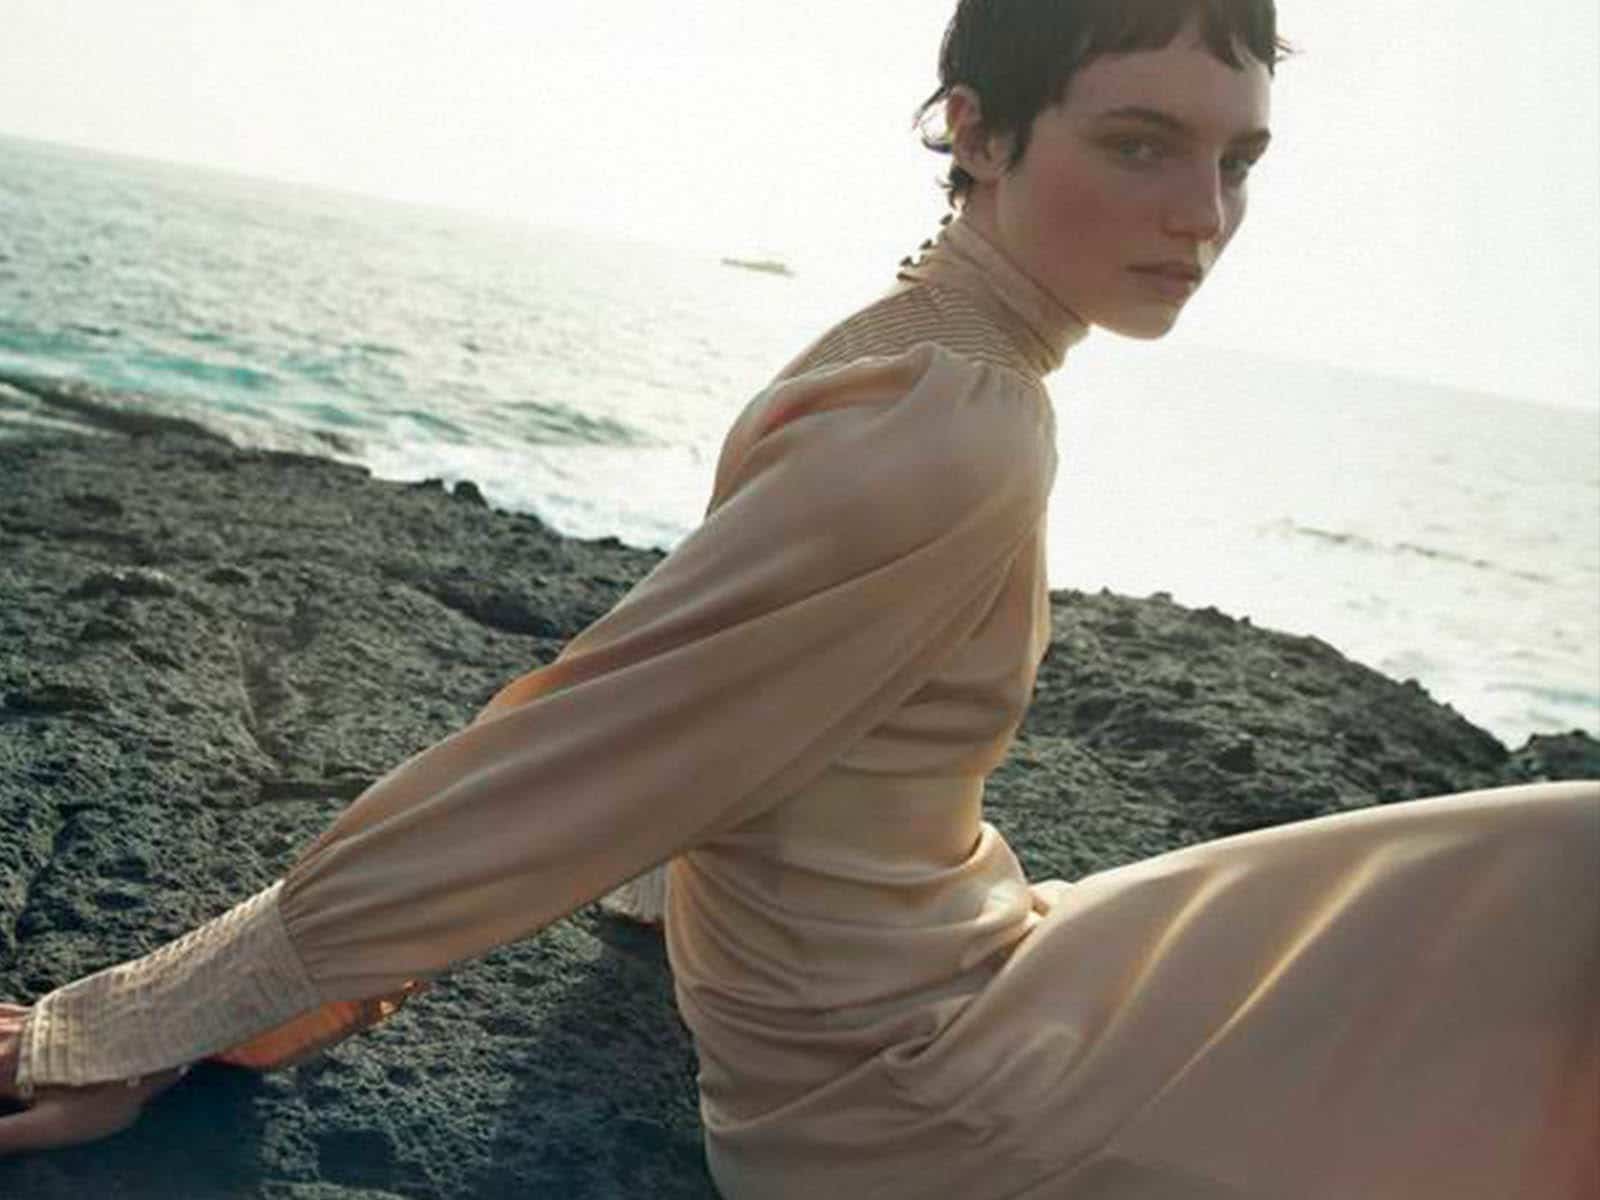 Zara lanza una colección nupcial inspirada en los años 20